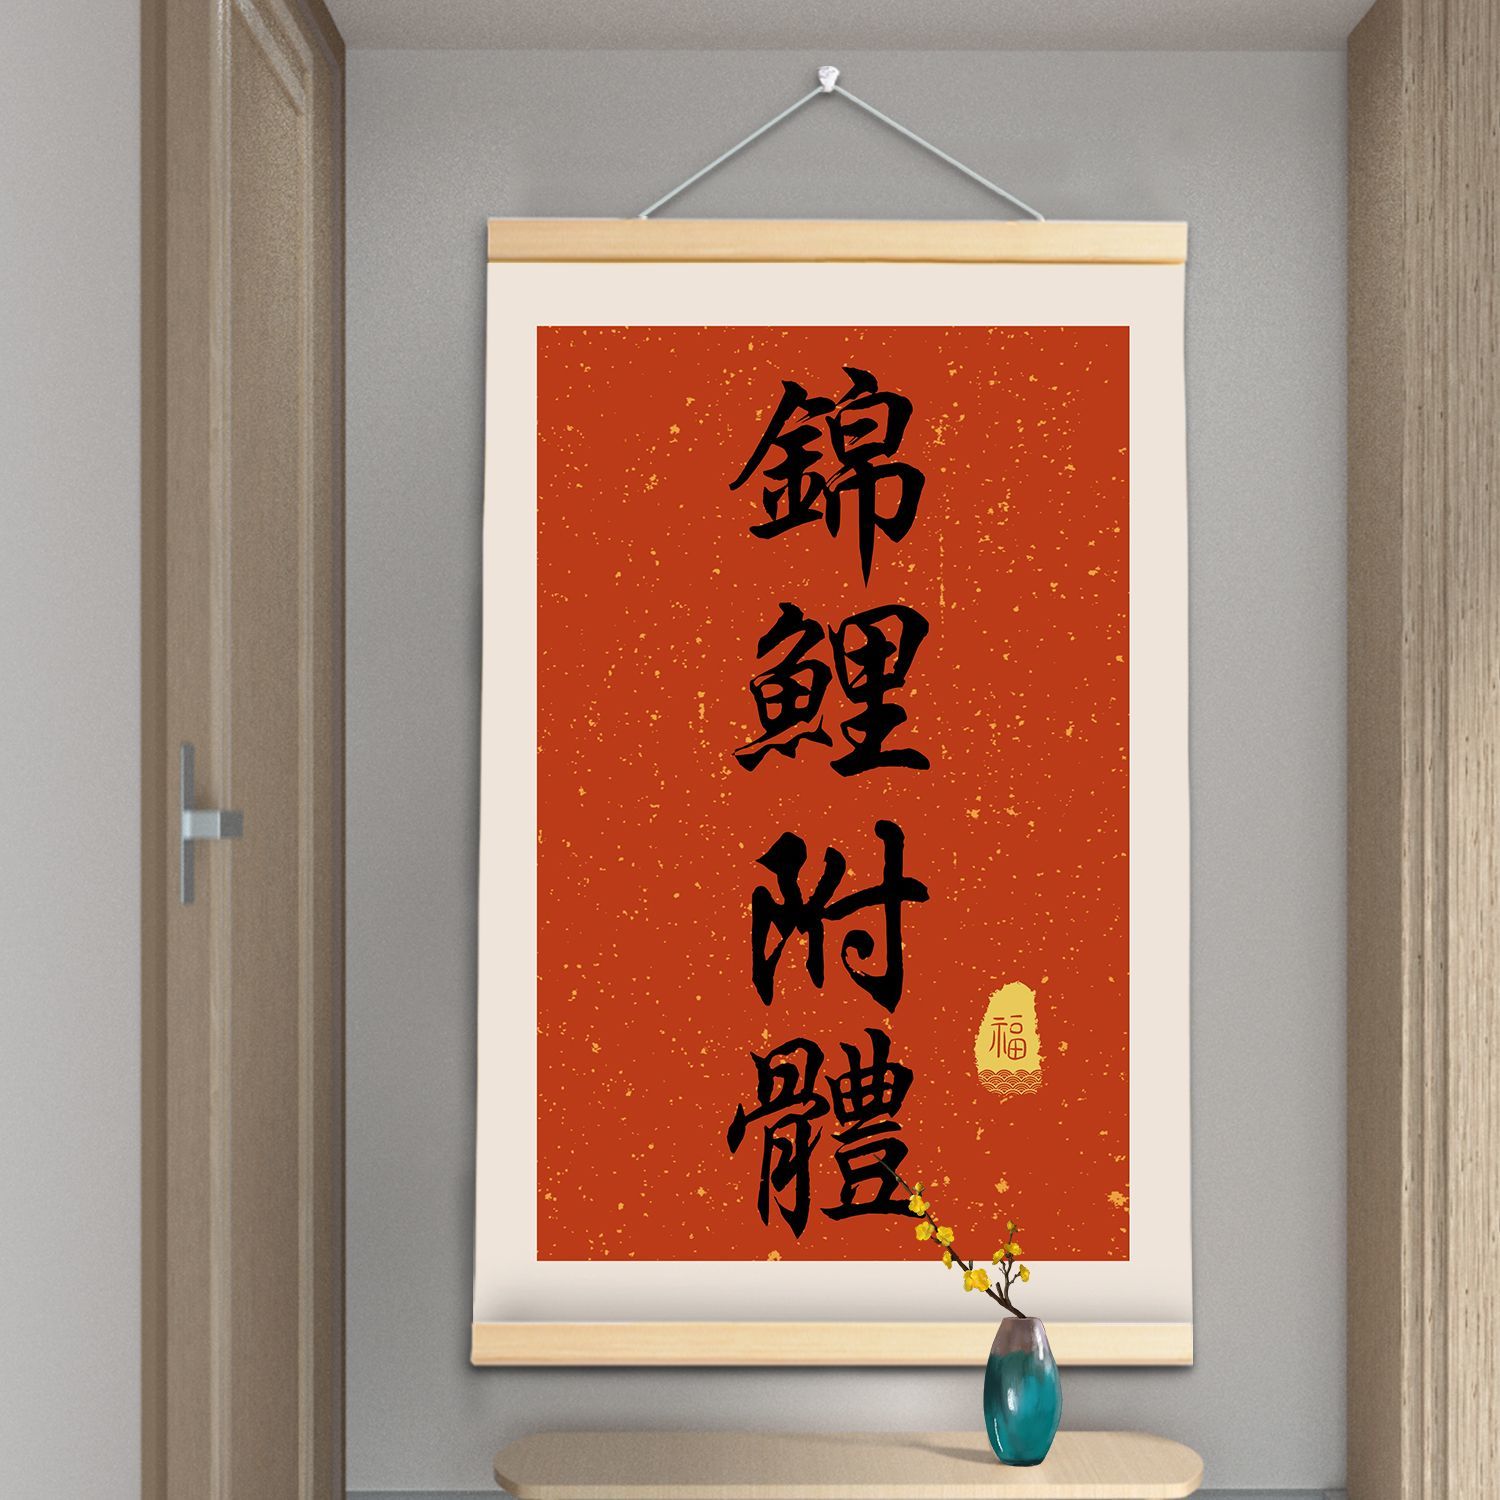 中國風知足常樂實木掛軸掛畫客廳臥室墻面裝飾畫創意布藝卷軸掛畫| 天天